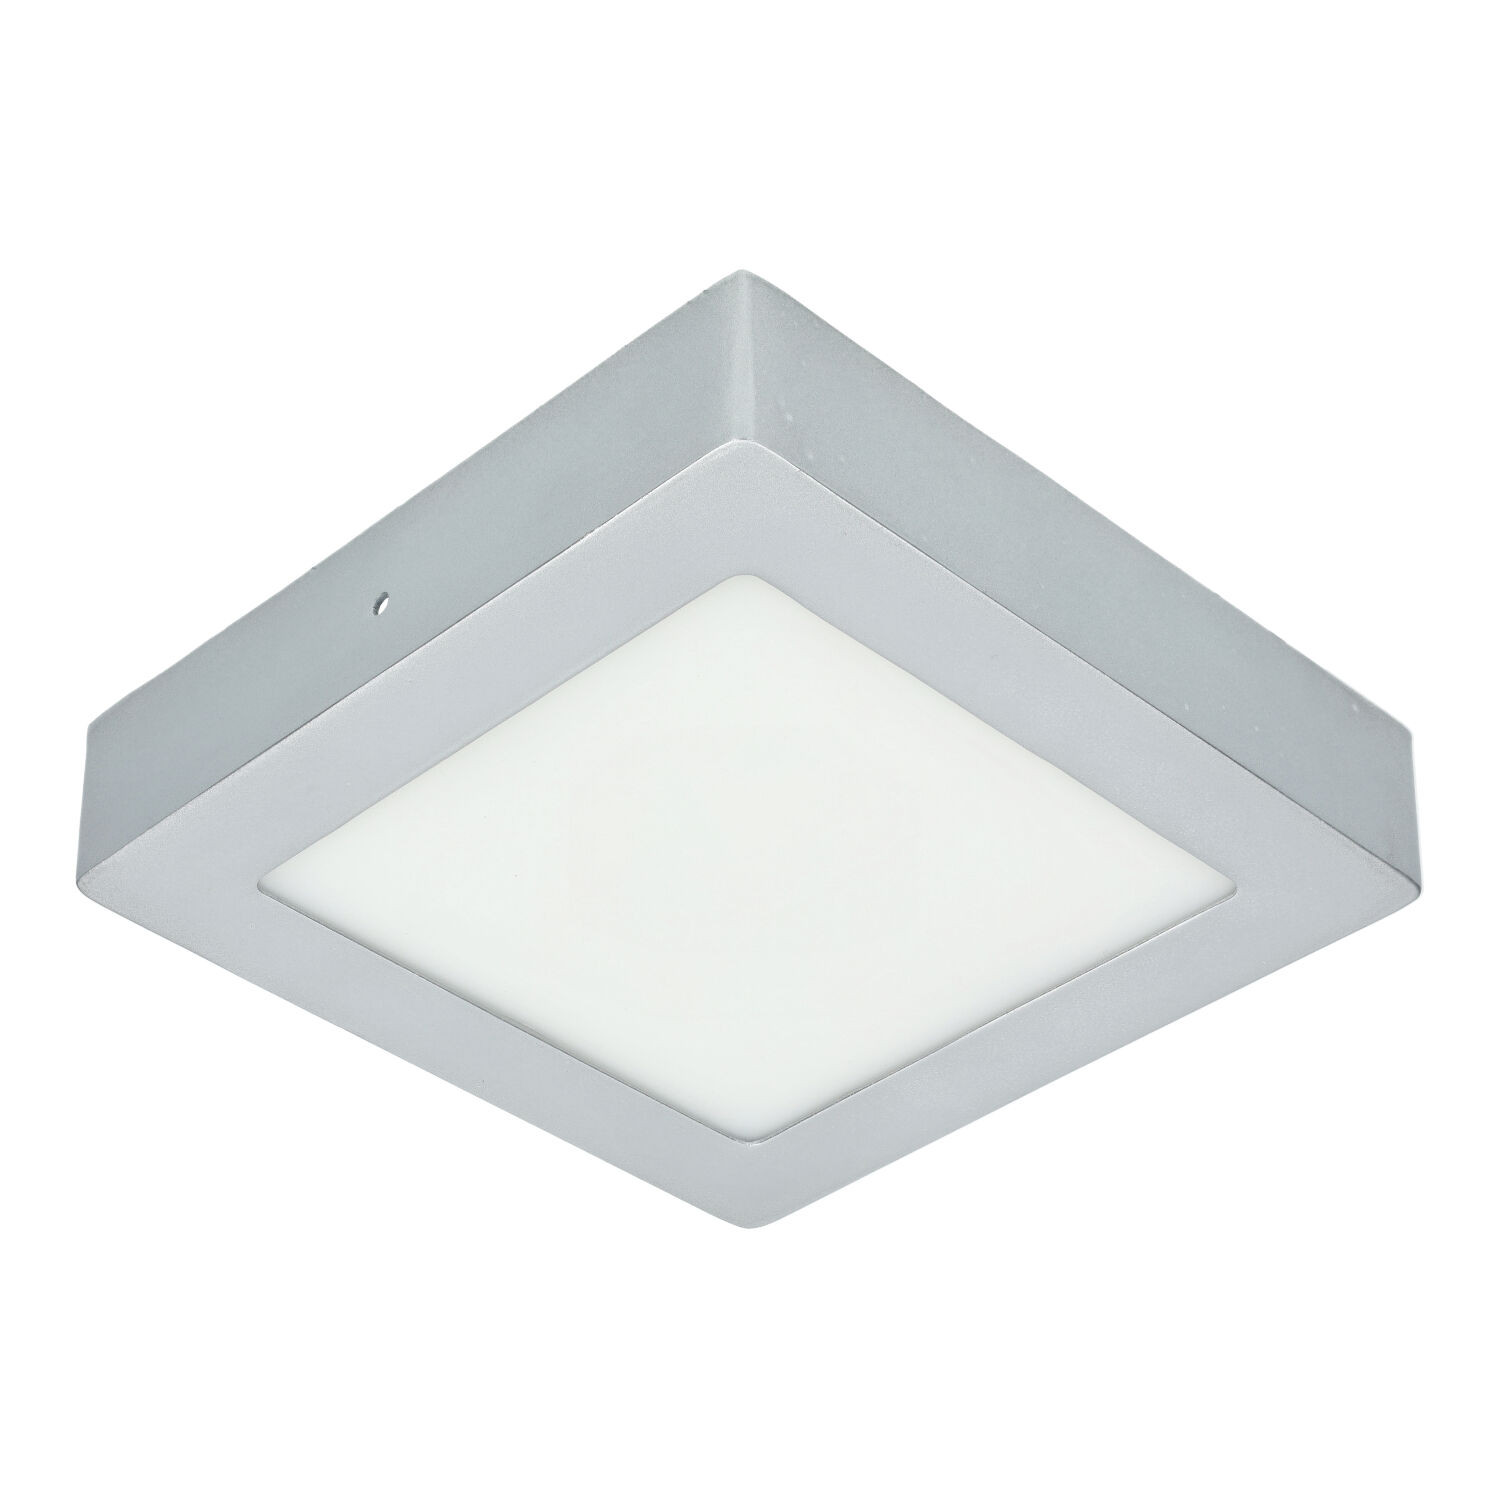 LED-Decke 12W Quadrat SILBER